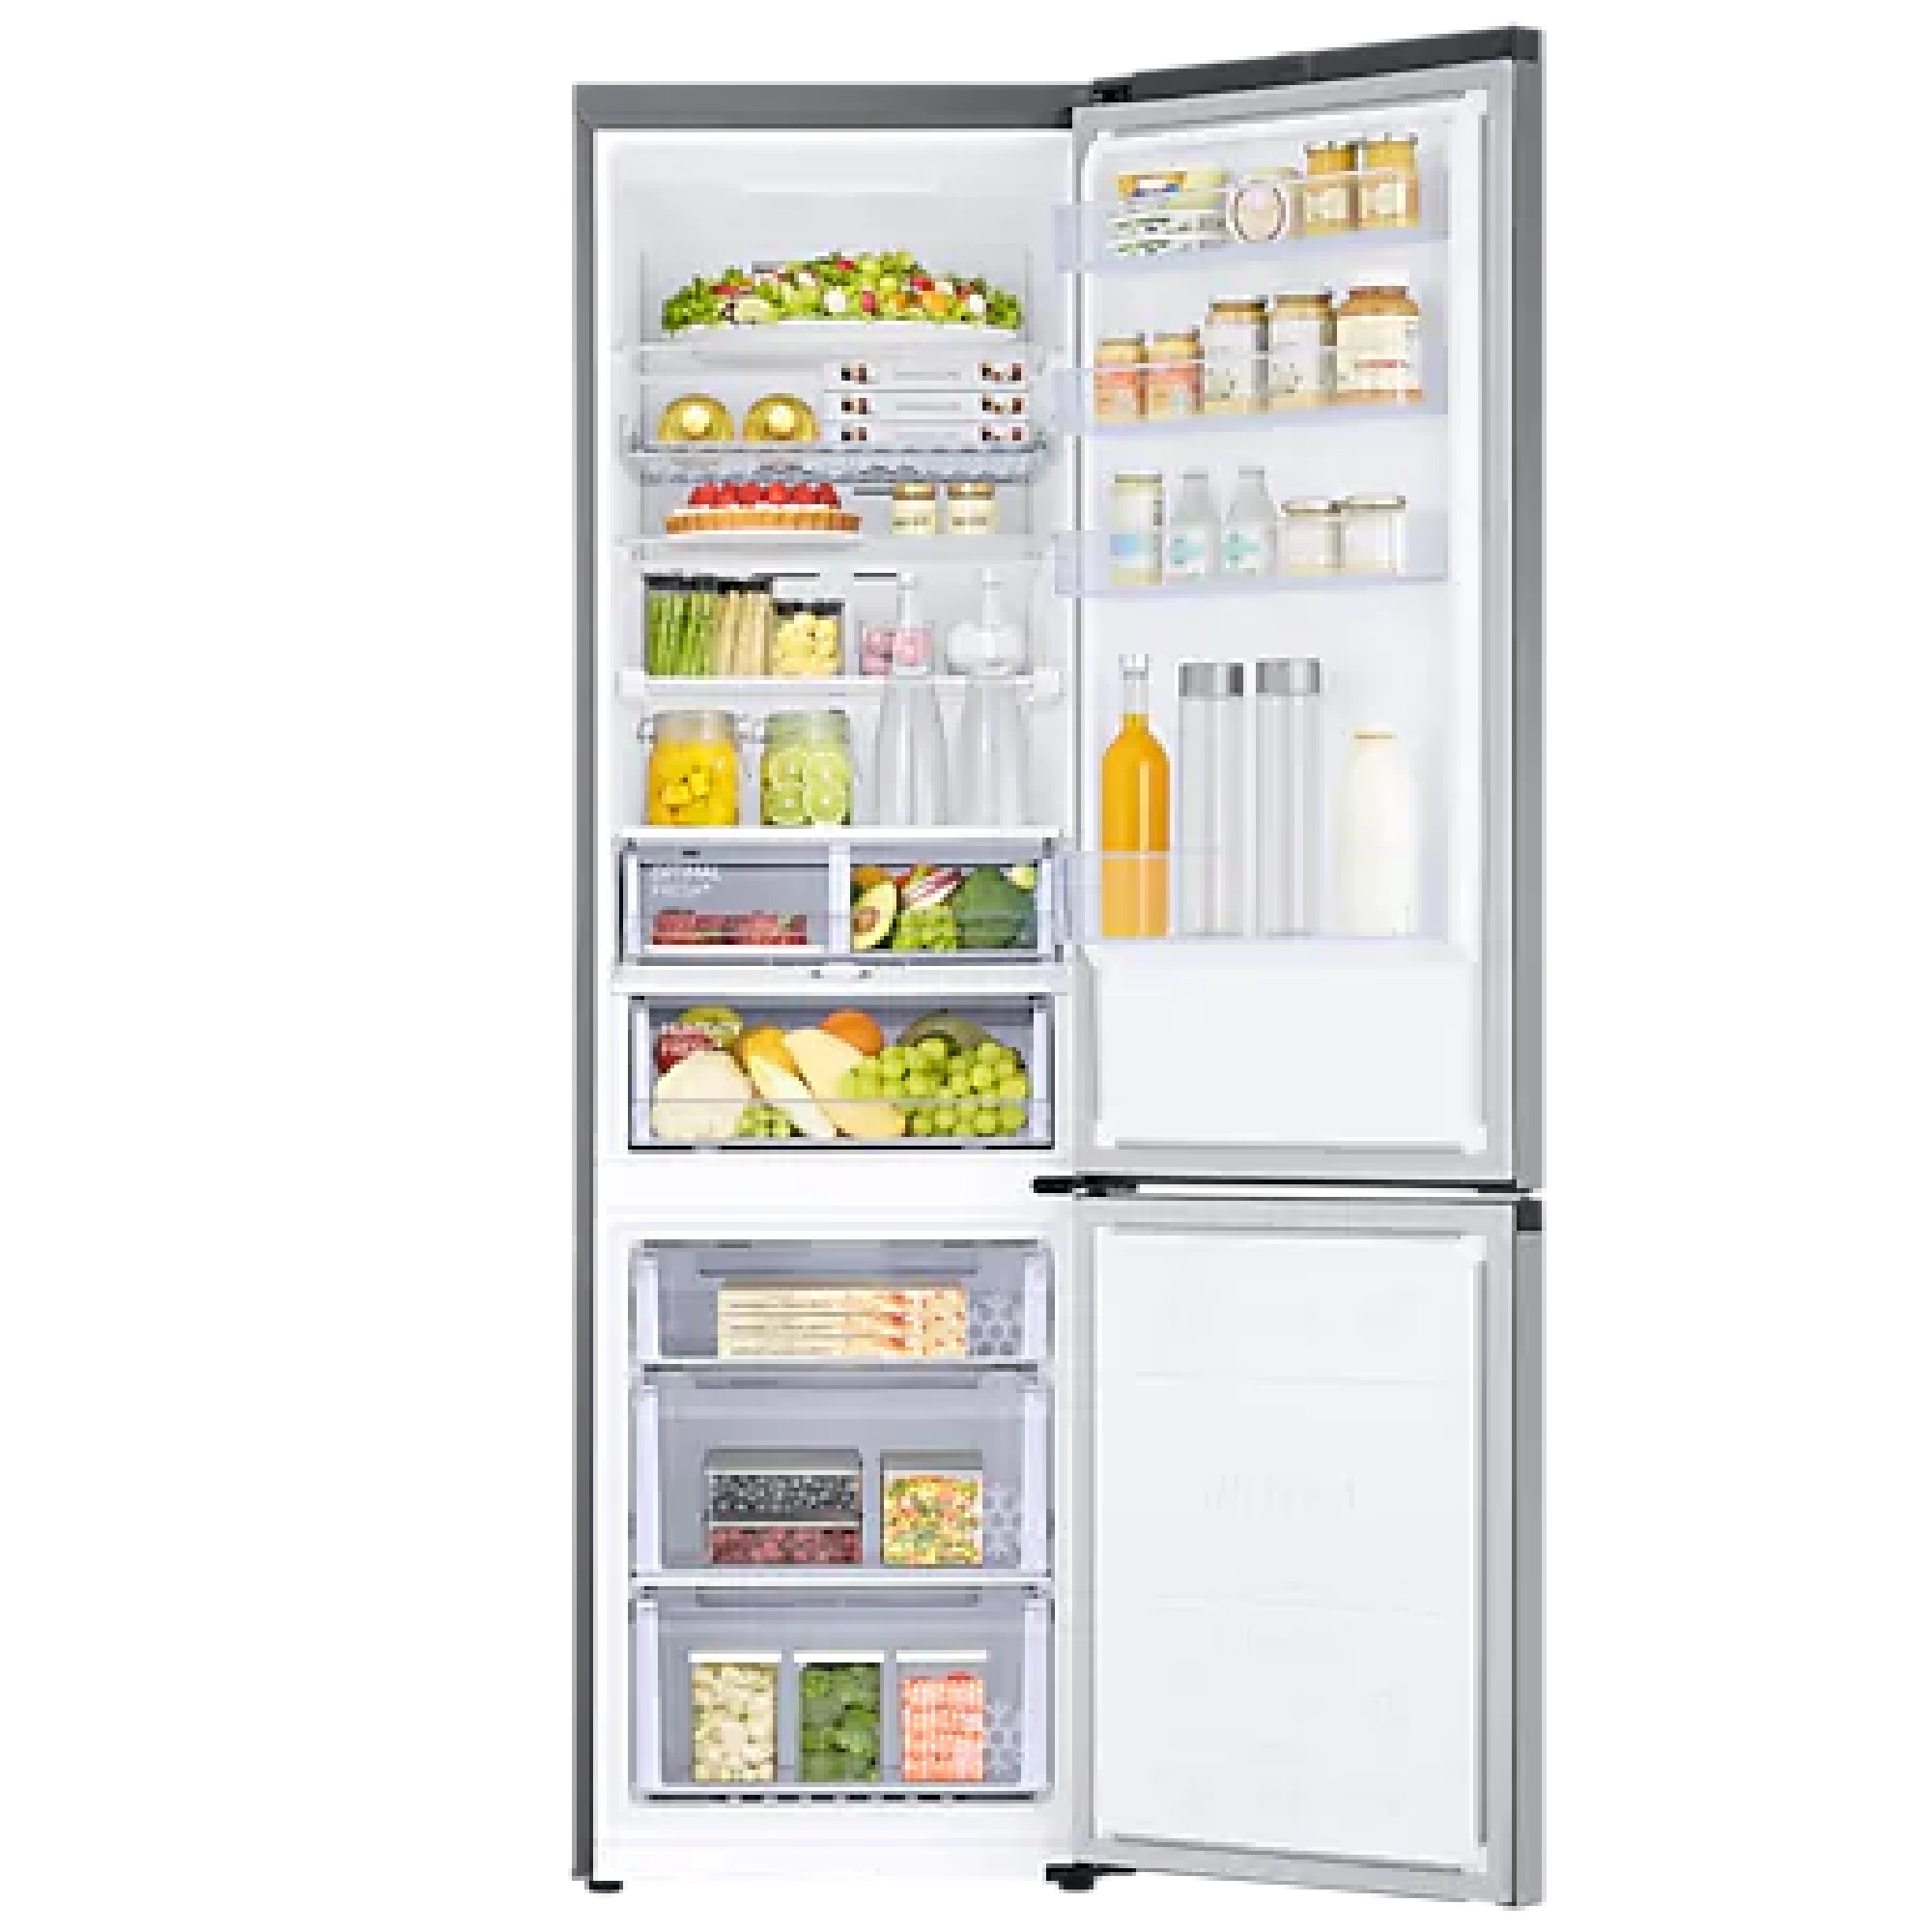 Недорогой холодильник no frost. Холодильник Samsung rb38t7762b1. Холодильник Samsung bespoke rb34a7b4f22/WT, черный. Холодильник Samsung RB 38. Samsung rb38t676fel.